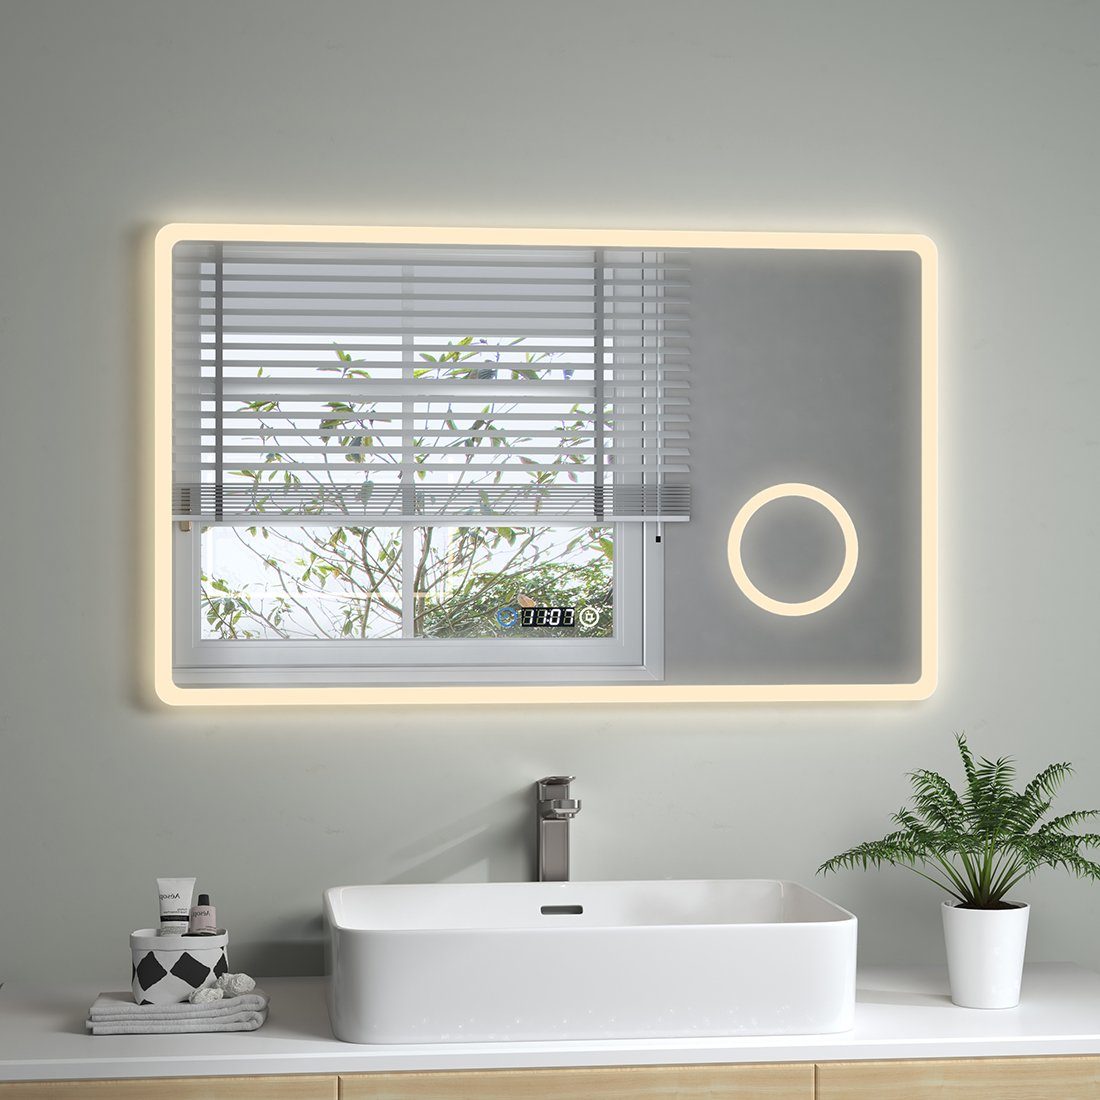 S'AFIELINA Badspiegel Badezimmerspiegel mit Beleuchtung LED Badspiegel  Wandspiegel, 100 x 60 cm,Touch-Schalter,Uhr,3 Lichtfarbe,3-Fach Vergrößerung